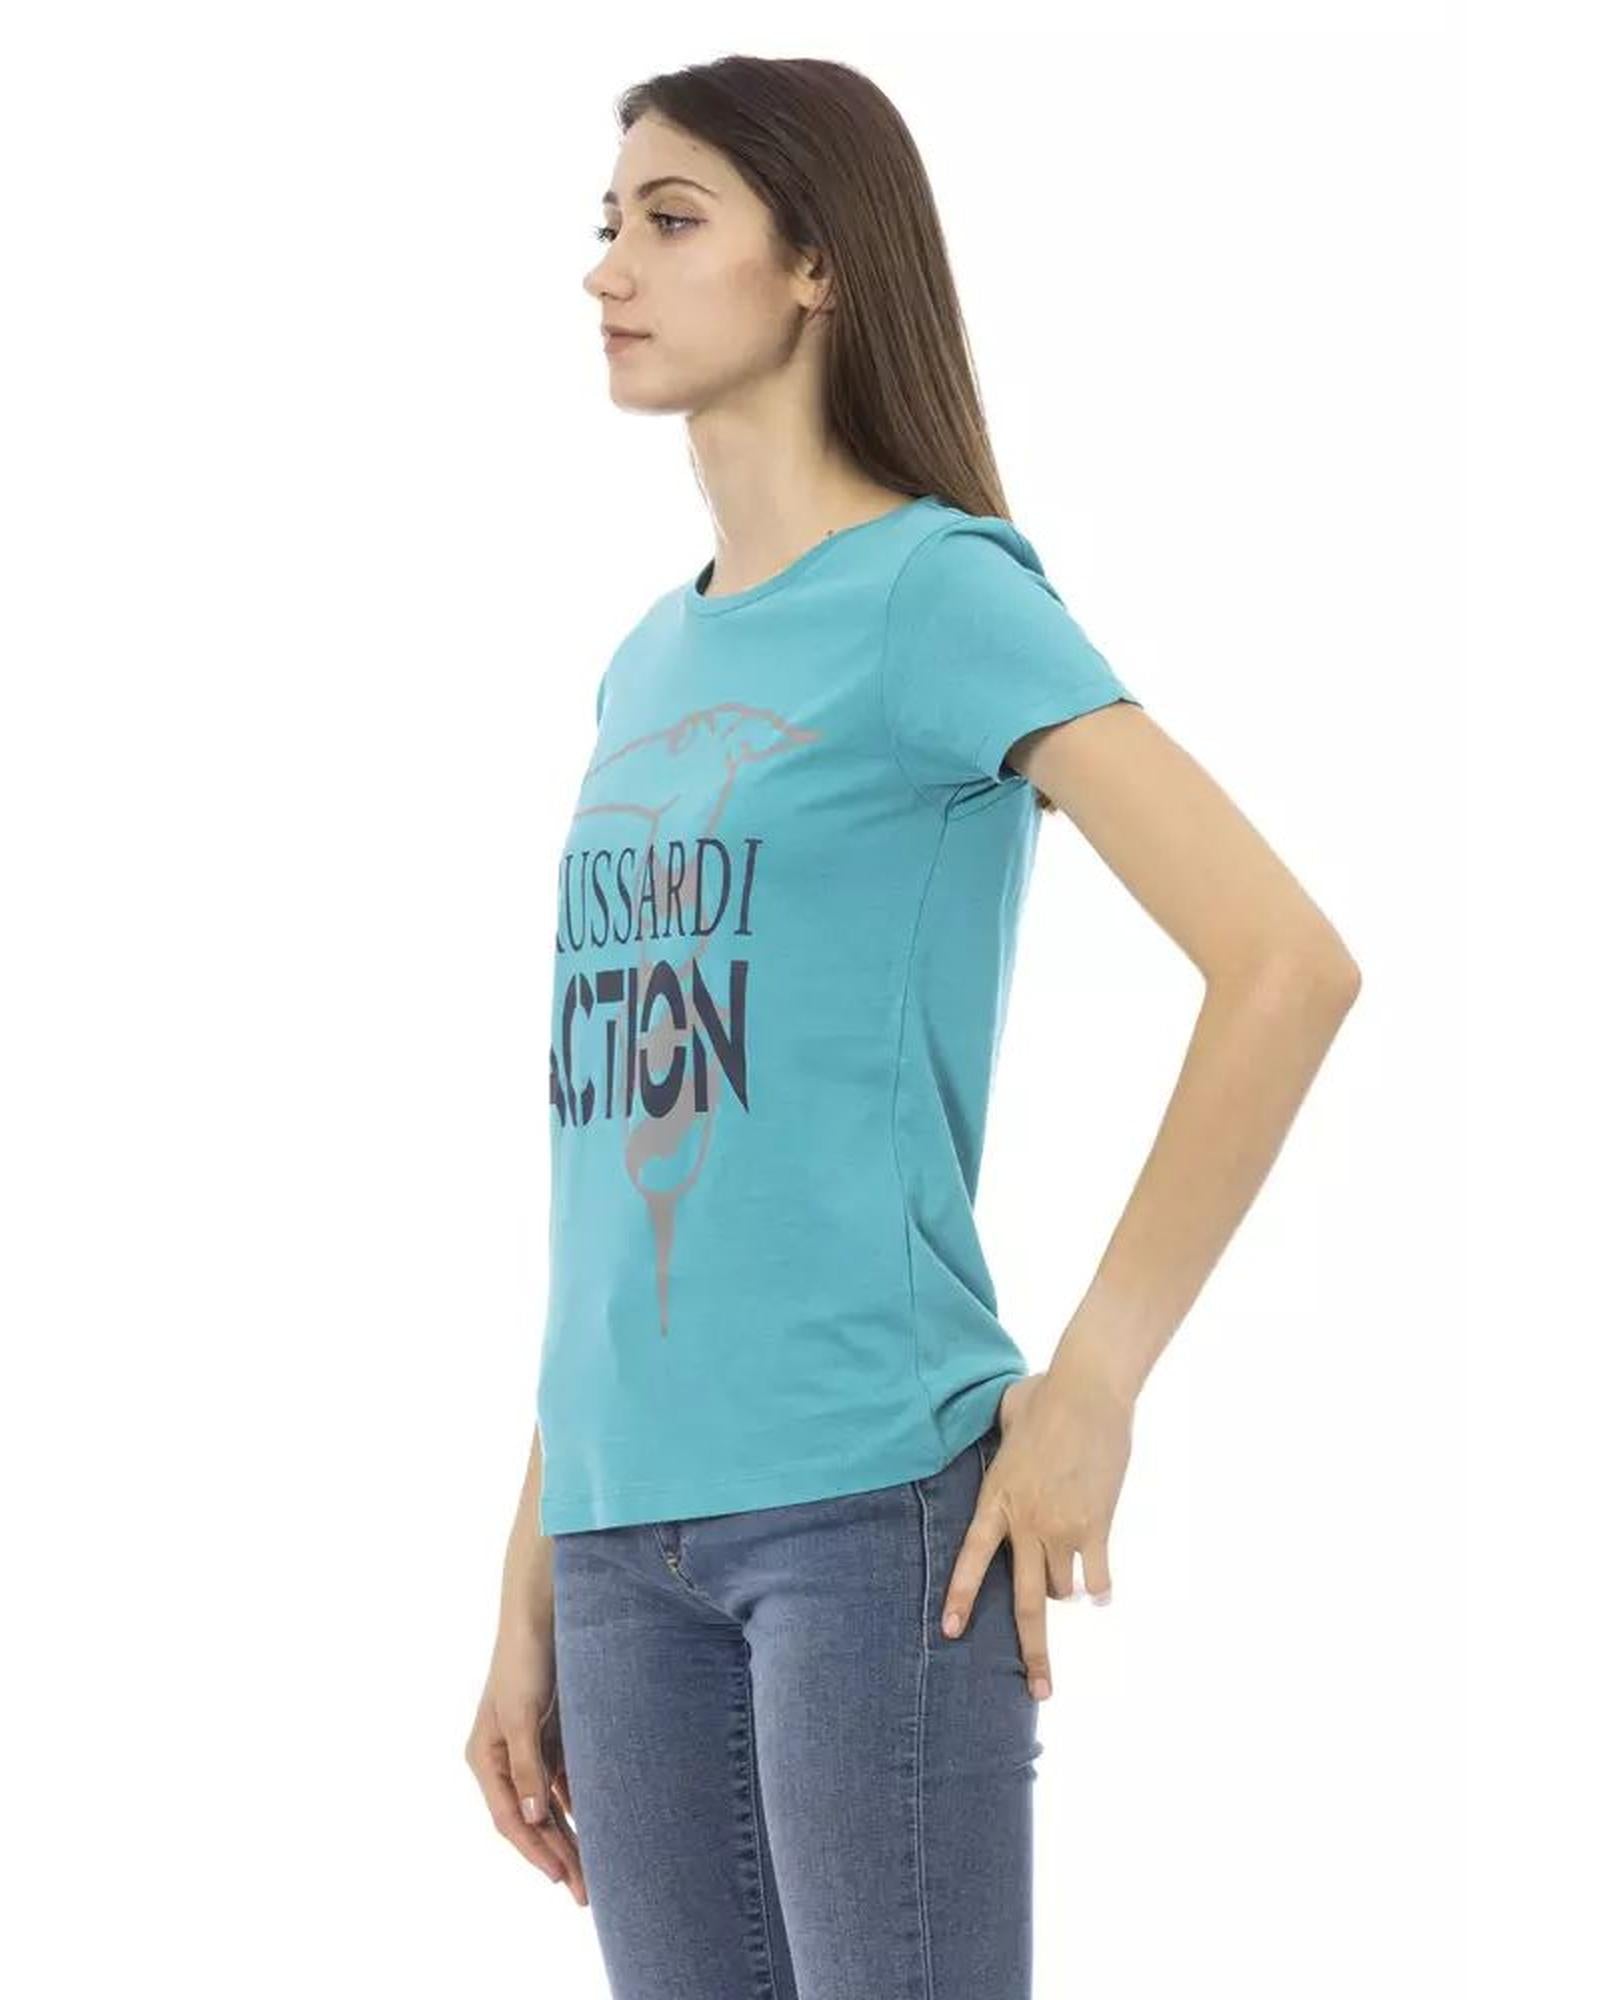 Women's Light Blue Cotton Tops & T-Shirt - M